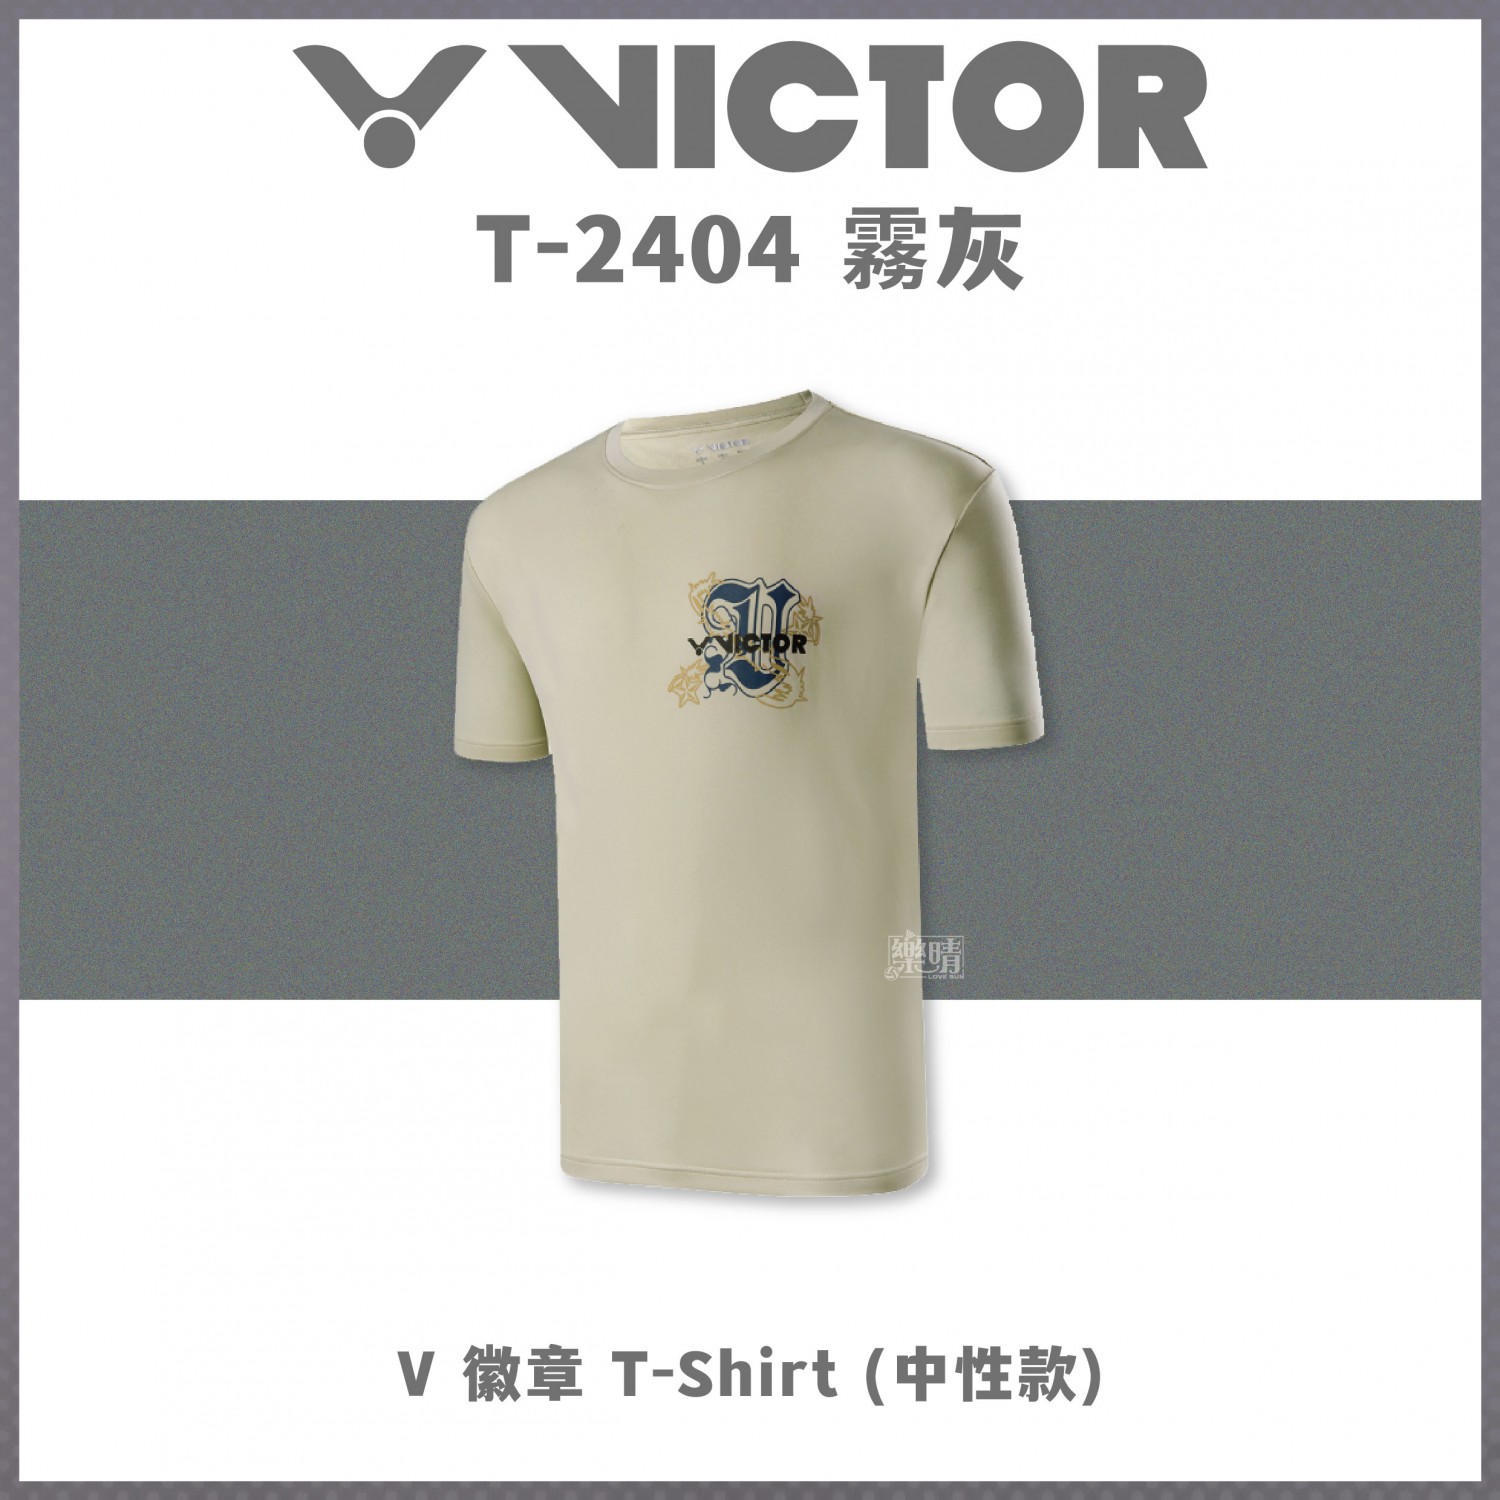 勝利 短袖 T-2404V